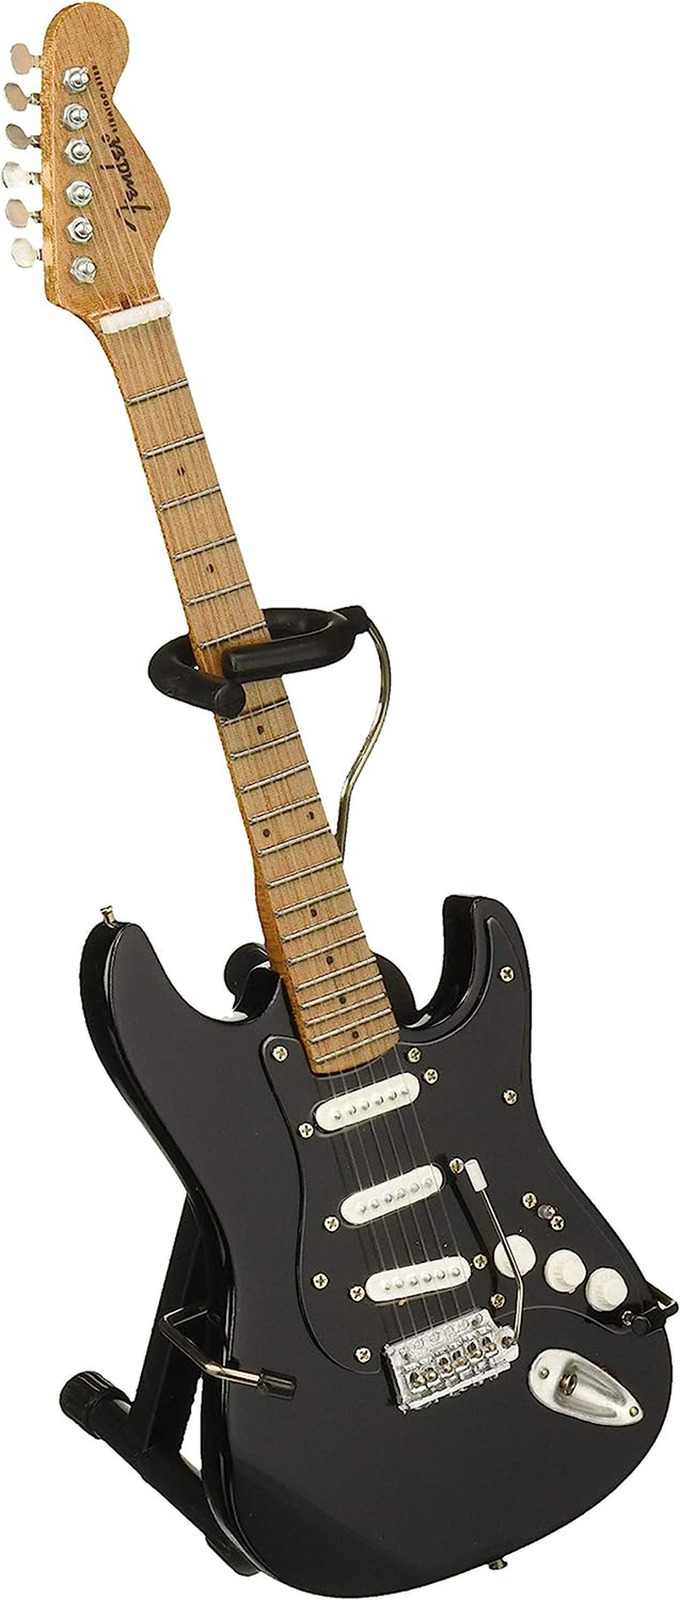 FS-009 Licensed Fender Stratocaster Black Guard